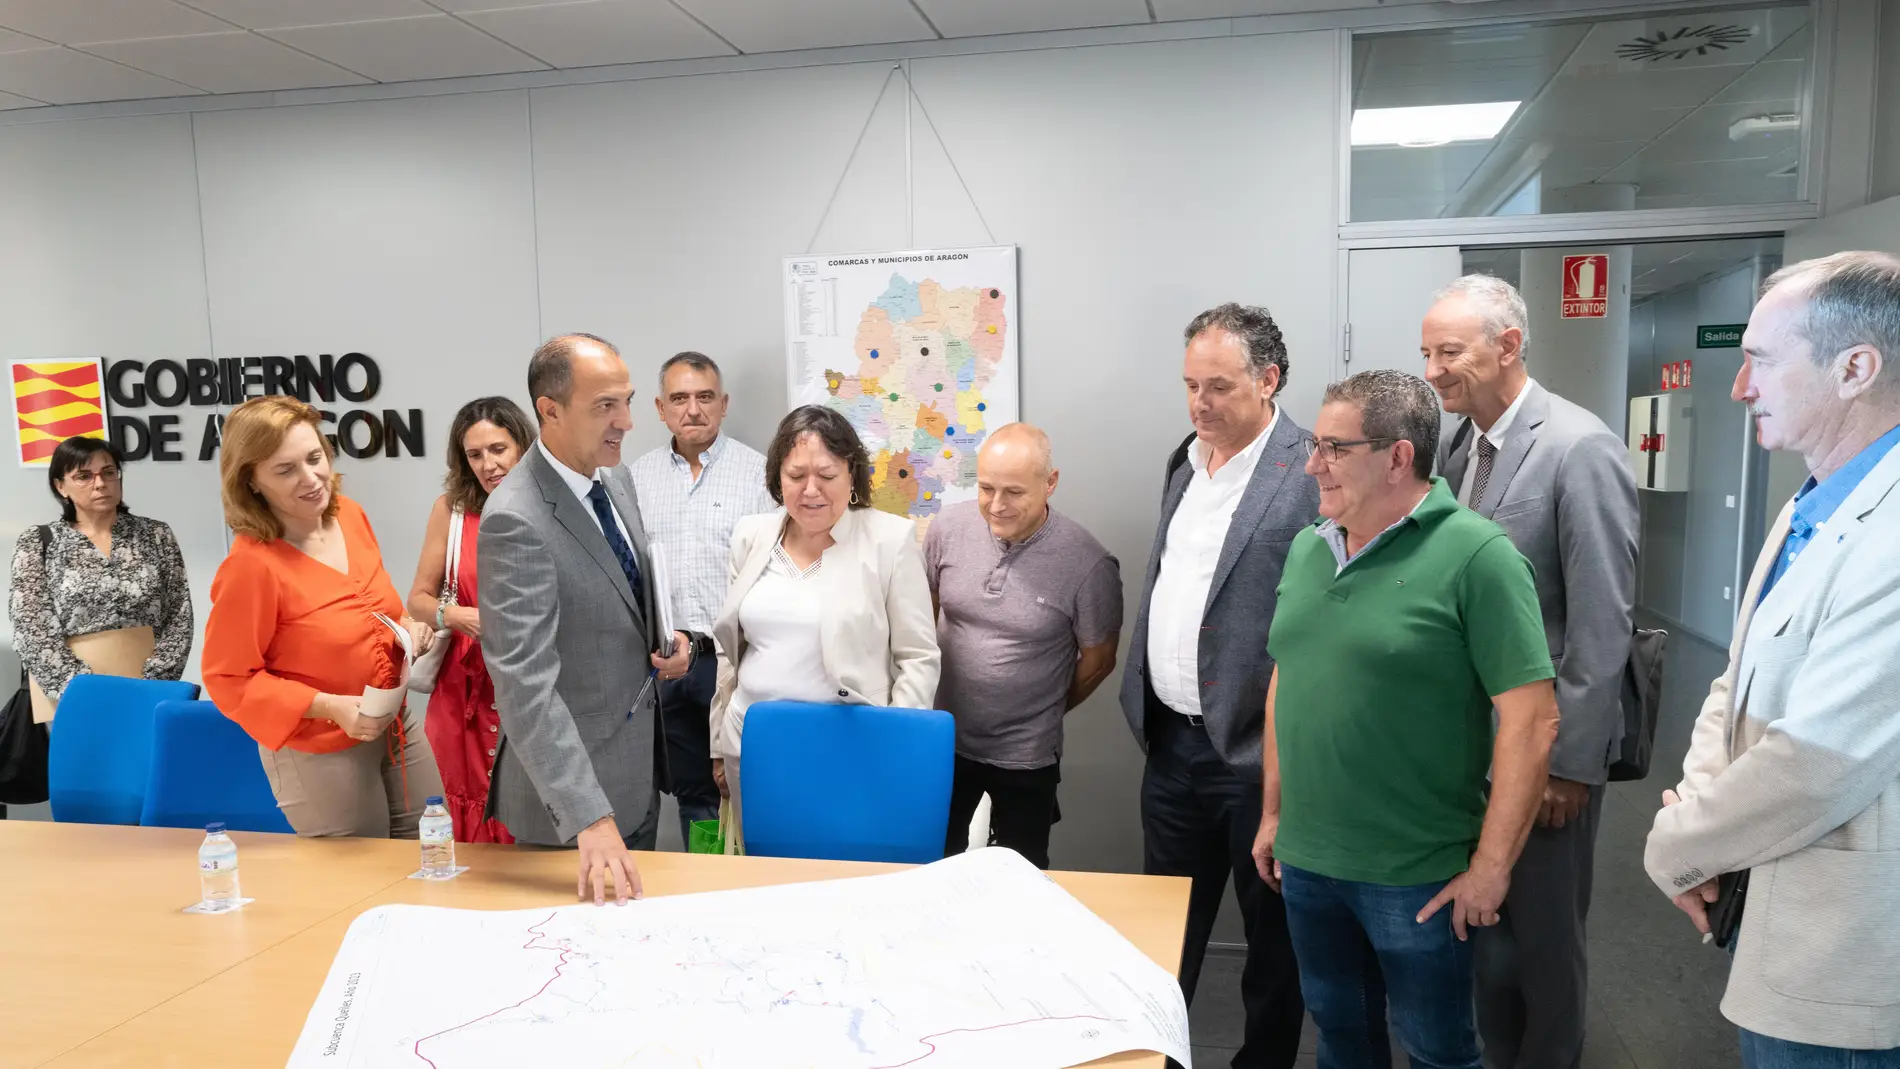 Bancalero con los alcaldes y otros representantes del Gobierno aragonés